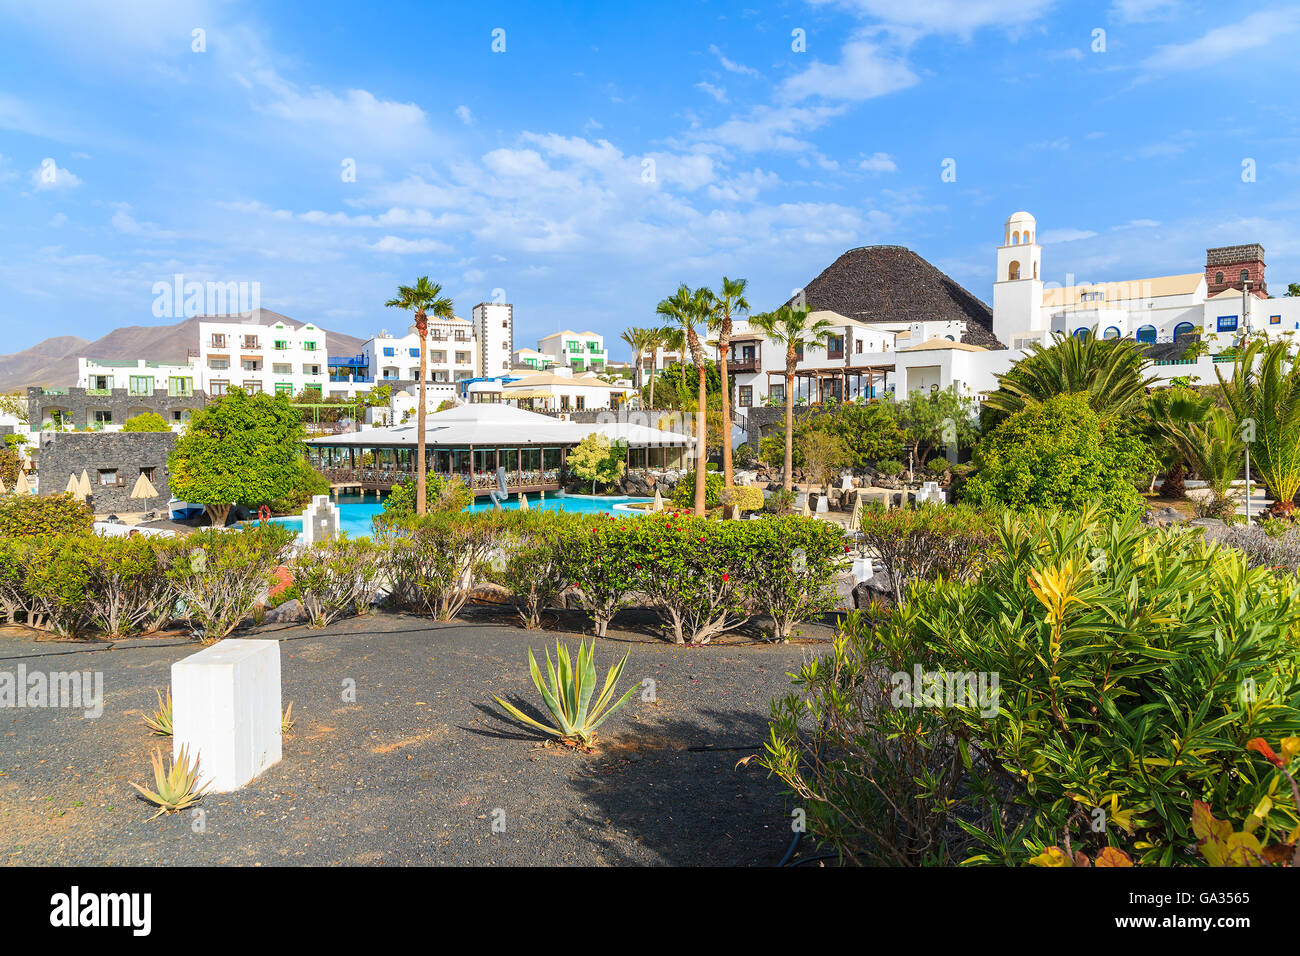 MARINA RUBICON, Lanzarote Island - Jan 11, 2015: Volcan hotel giardino con ville in Rubicone marina, che è una parte di Playa Blanca holiday resort town. Le isole Canarie sono meta di vacanze. Foto Stock